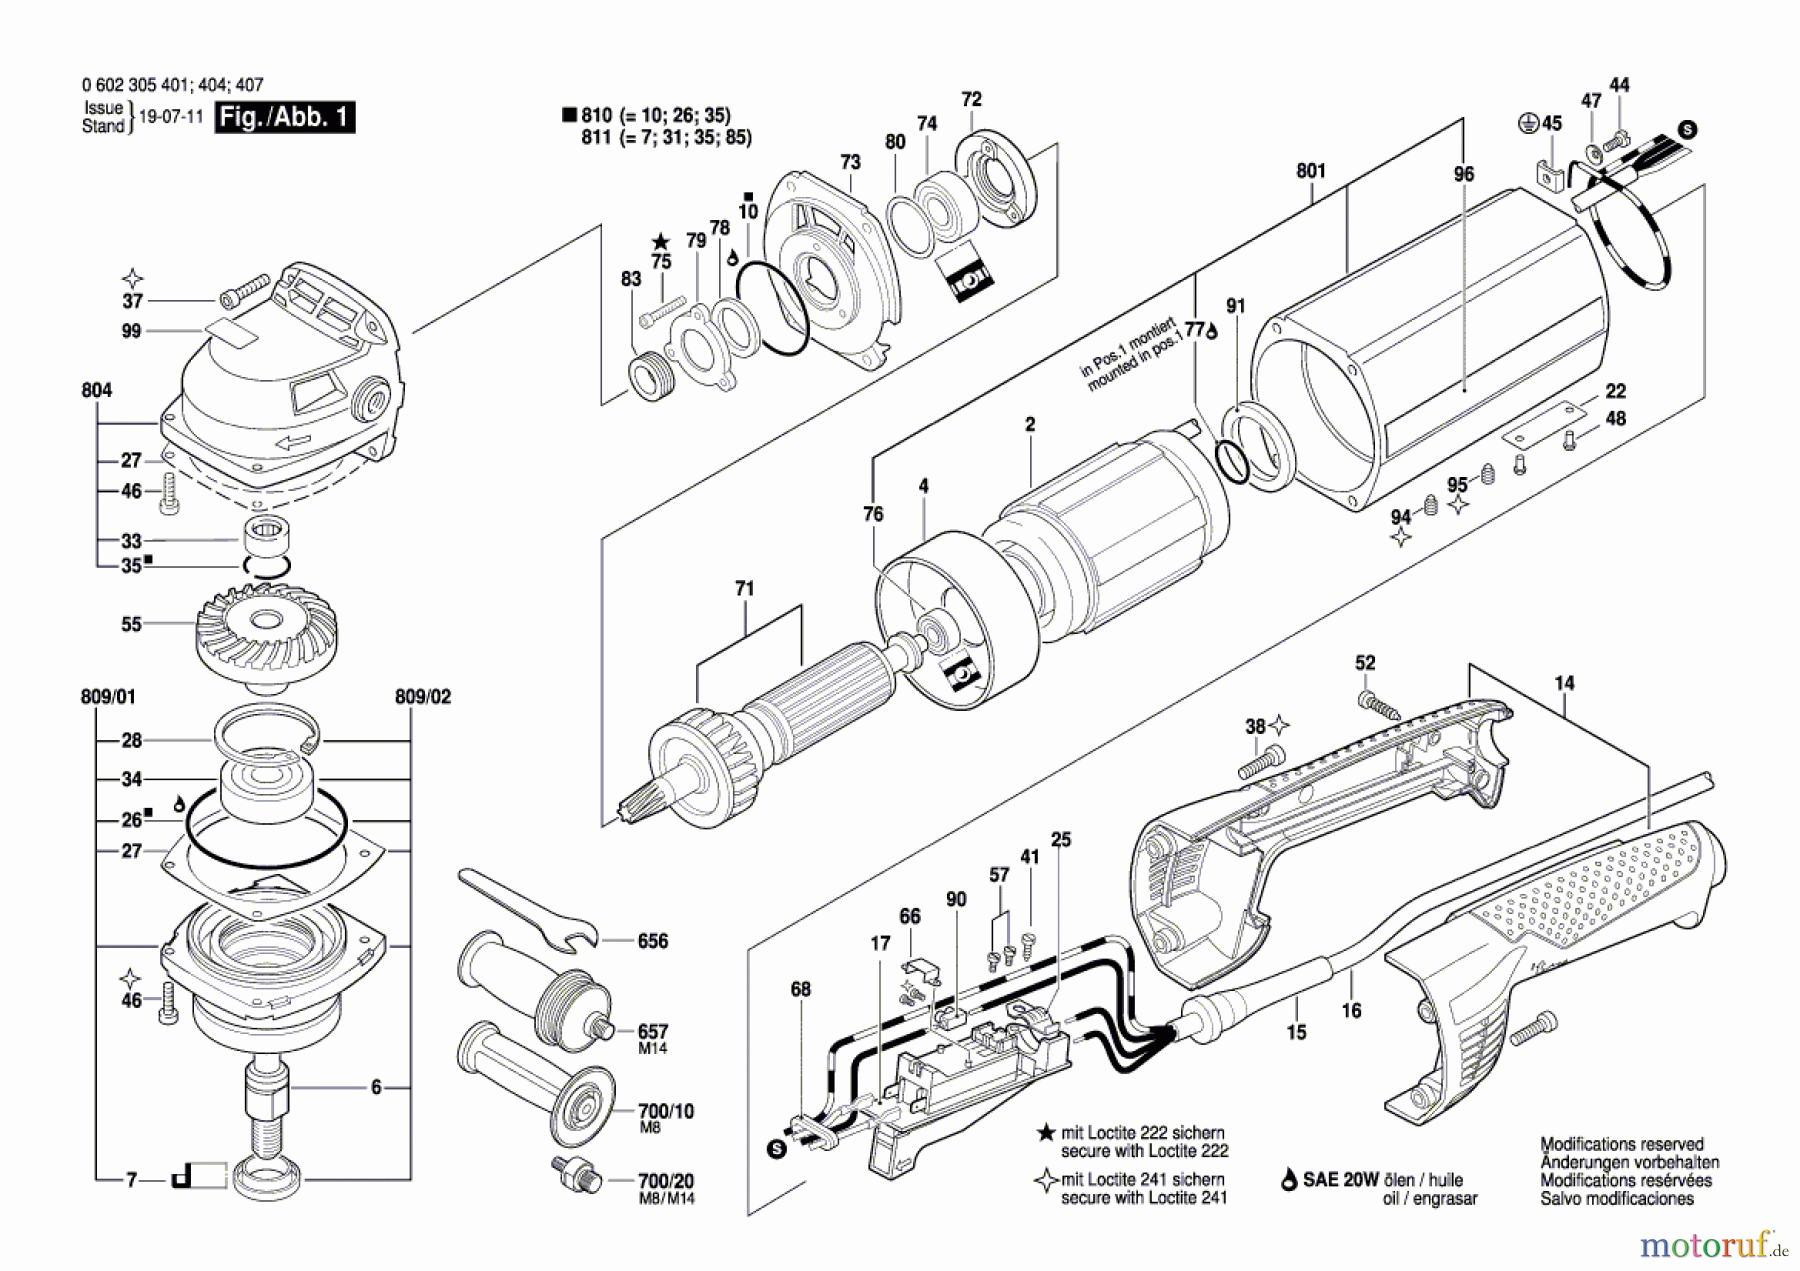  Bosch Werkzeug Winkelpolierer ---- Seite 1